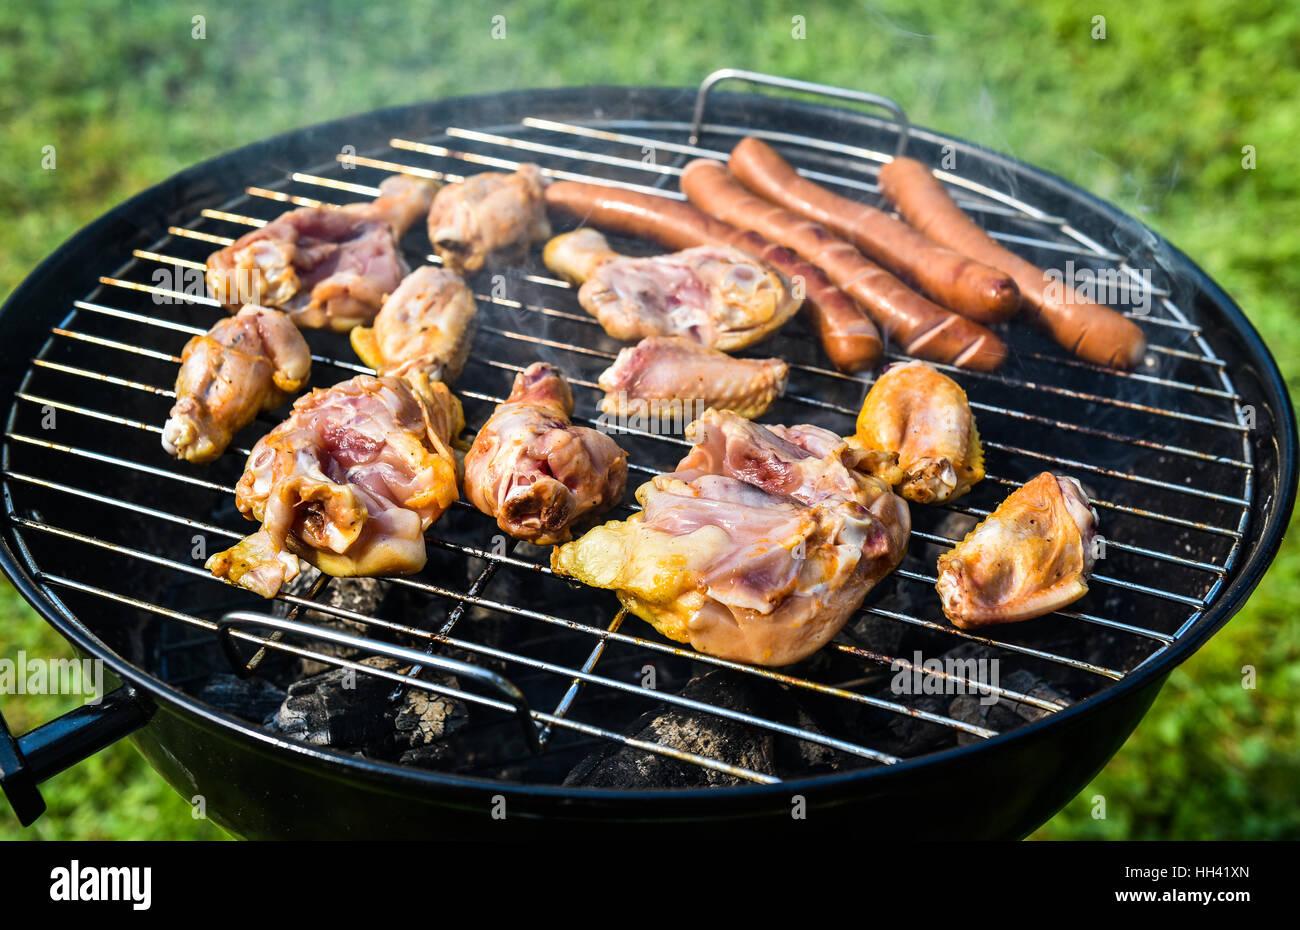 Köstliche Auswahl an Fleisch am Grill grill mit Char Kohle. Grillen von  Lebensmitteln auf einem Weber Typ kleine billige BBQ grill zu Hause.  Würstchen, Hähnchen und heiß machen Stockfotografie - Alamy